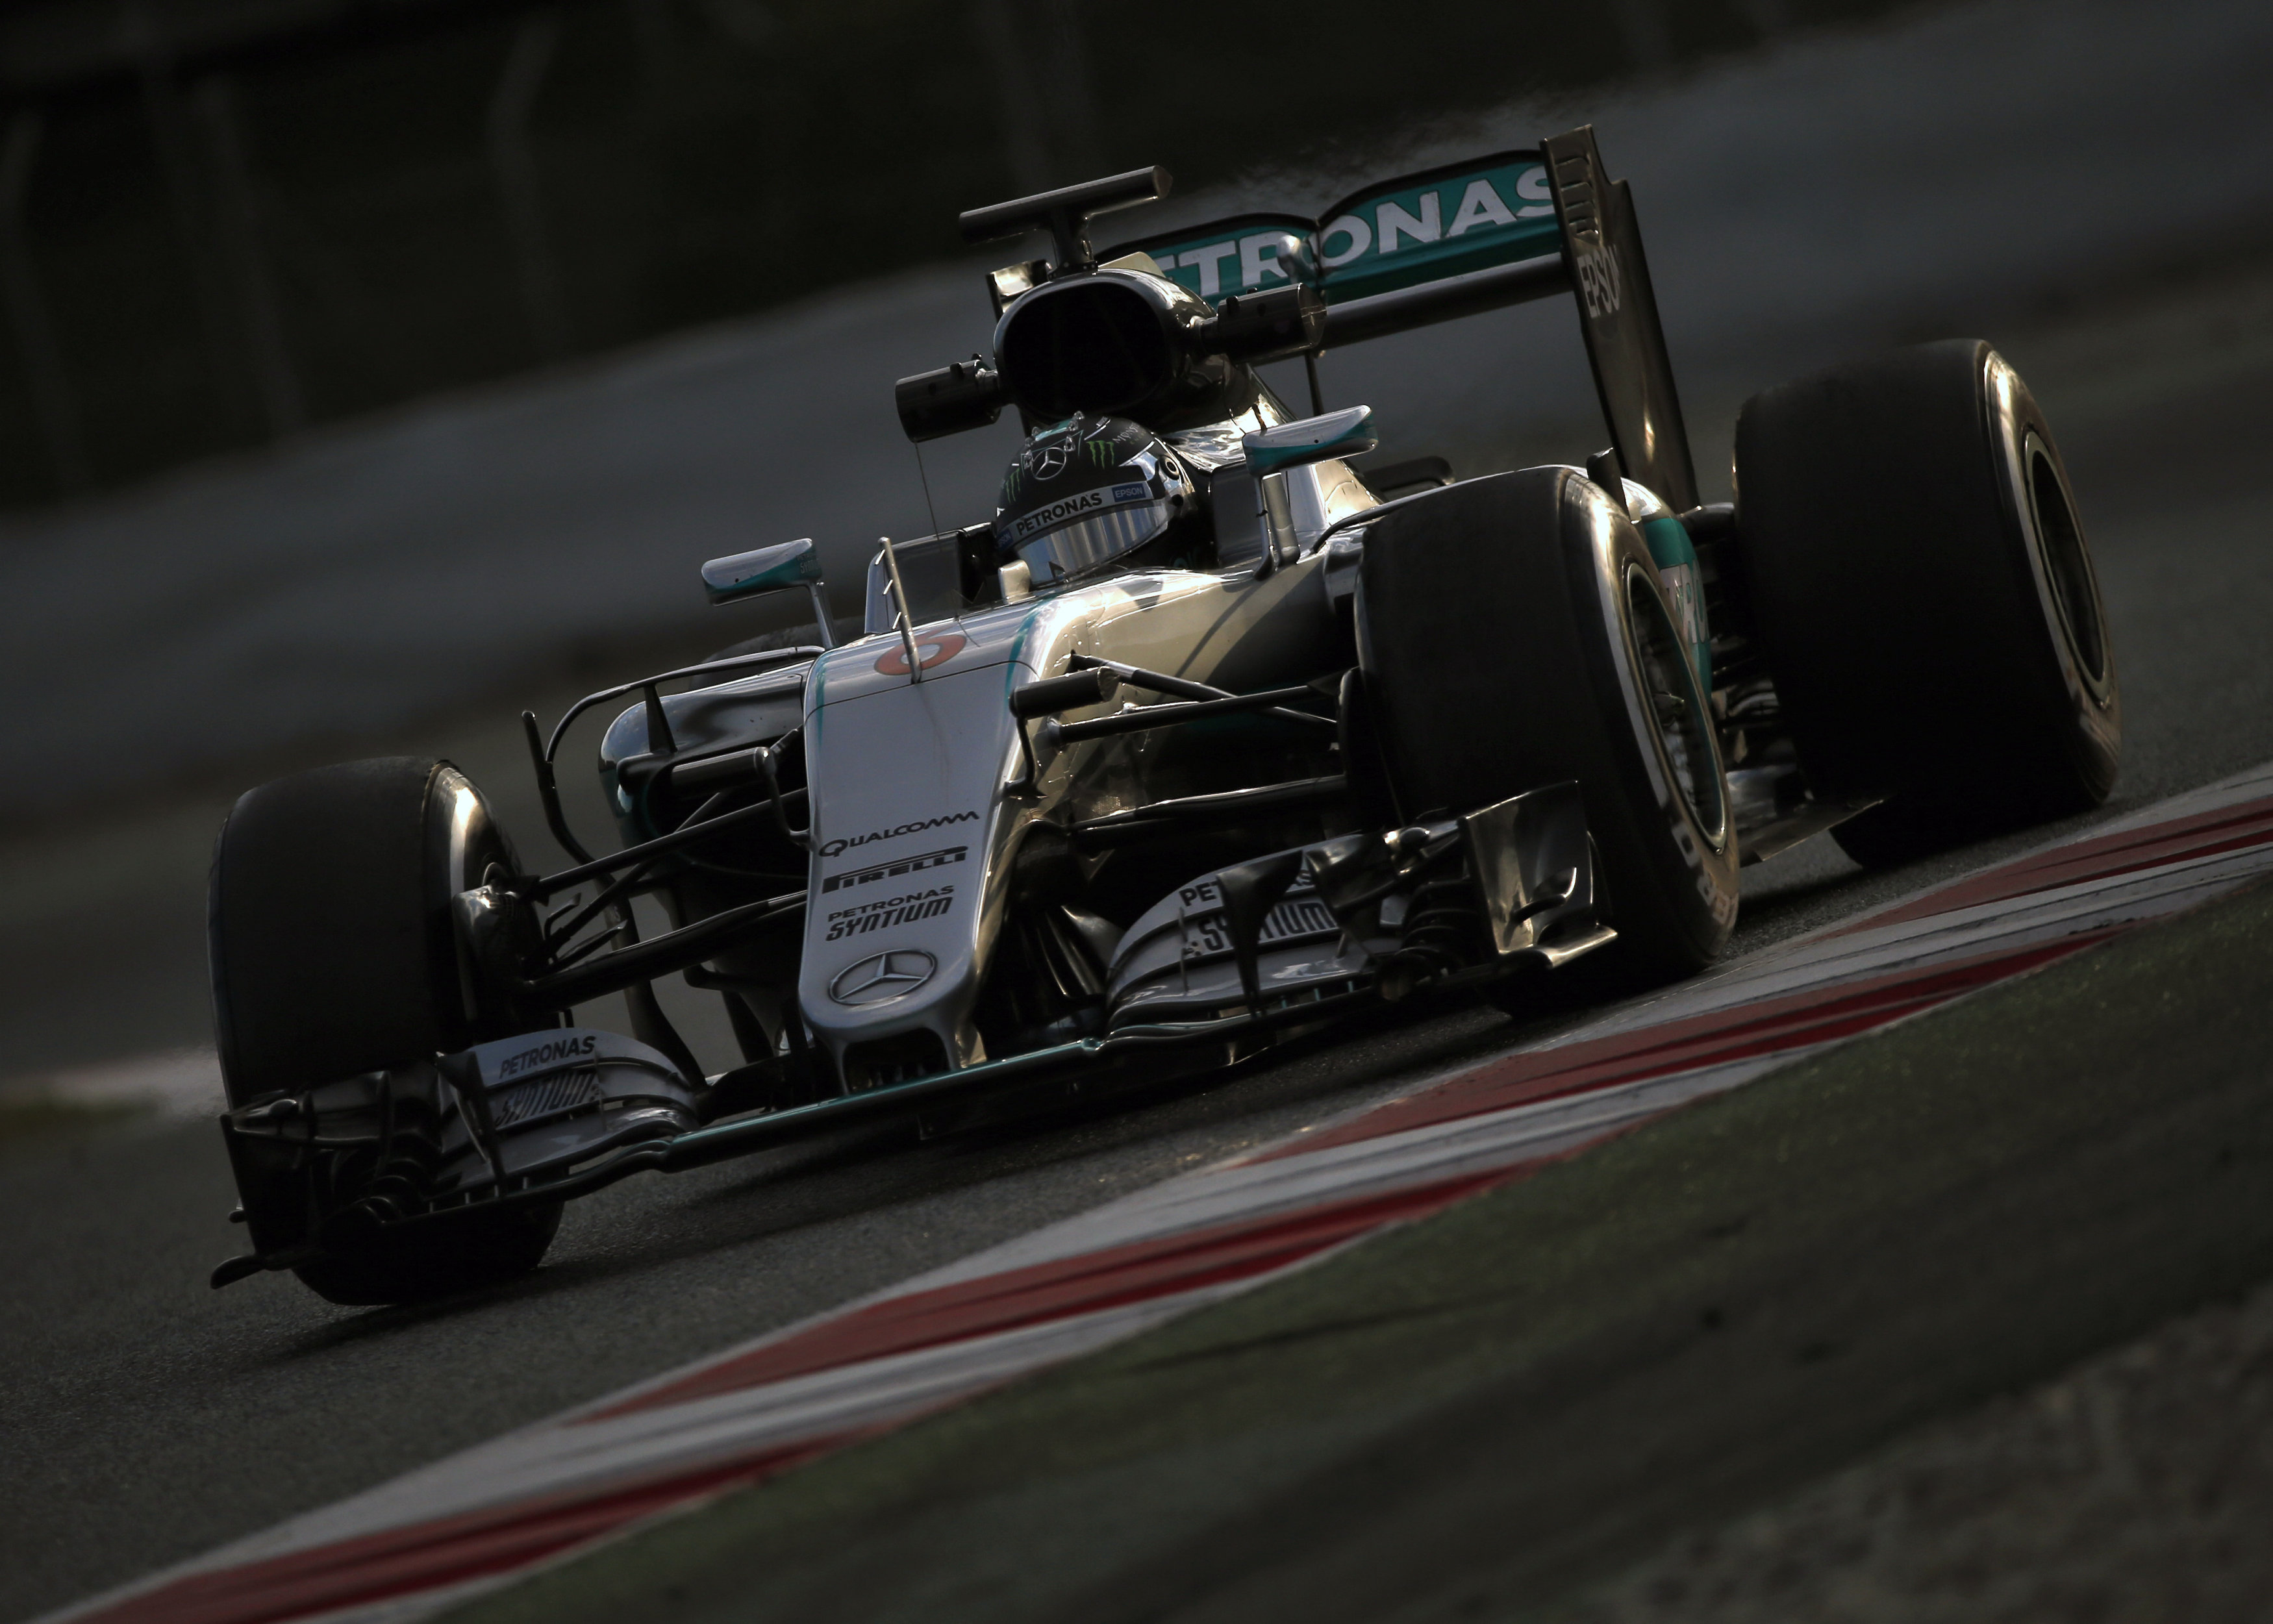 Rosberg el más rápido en los test de Montmeló, Alonso marcó el tercer tiempo